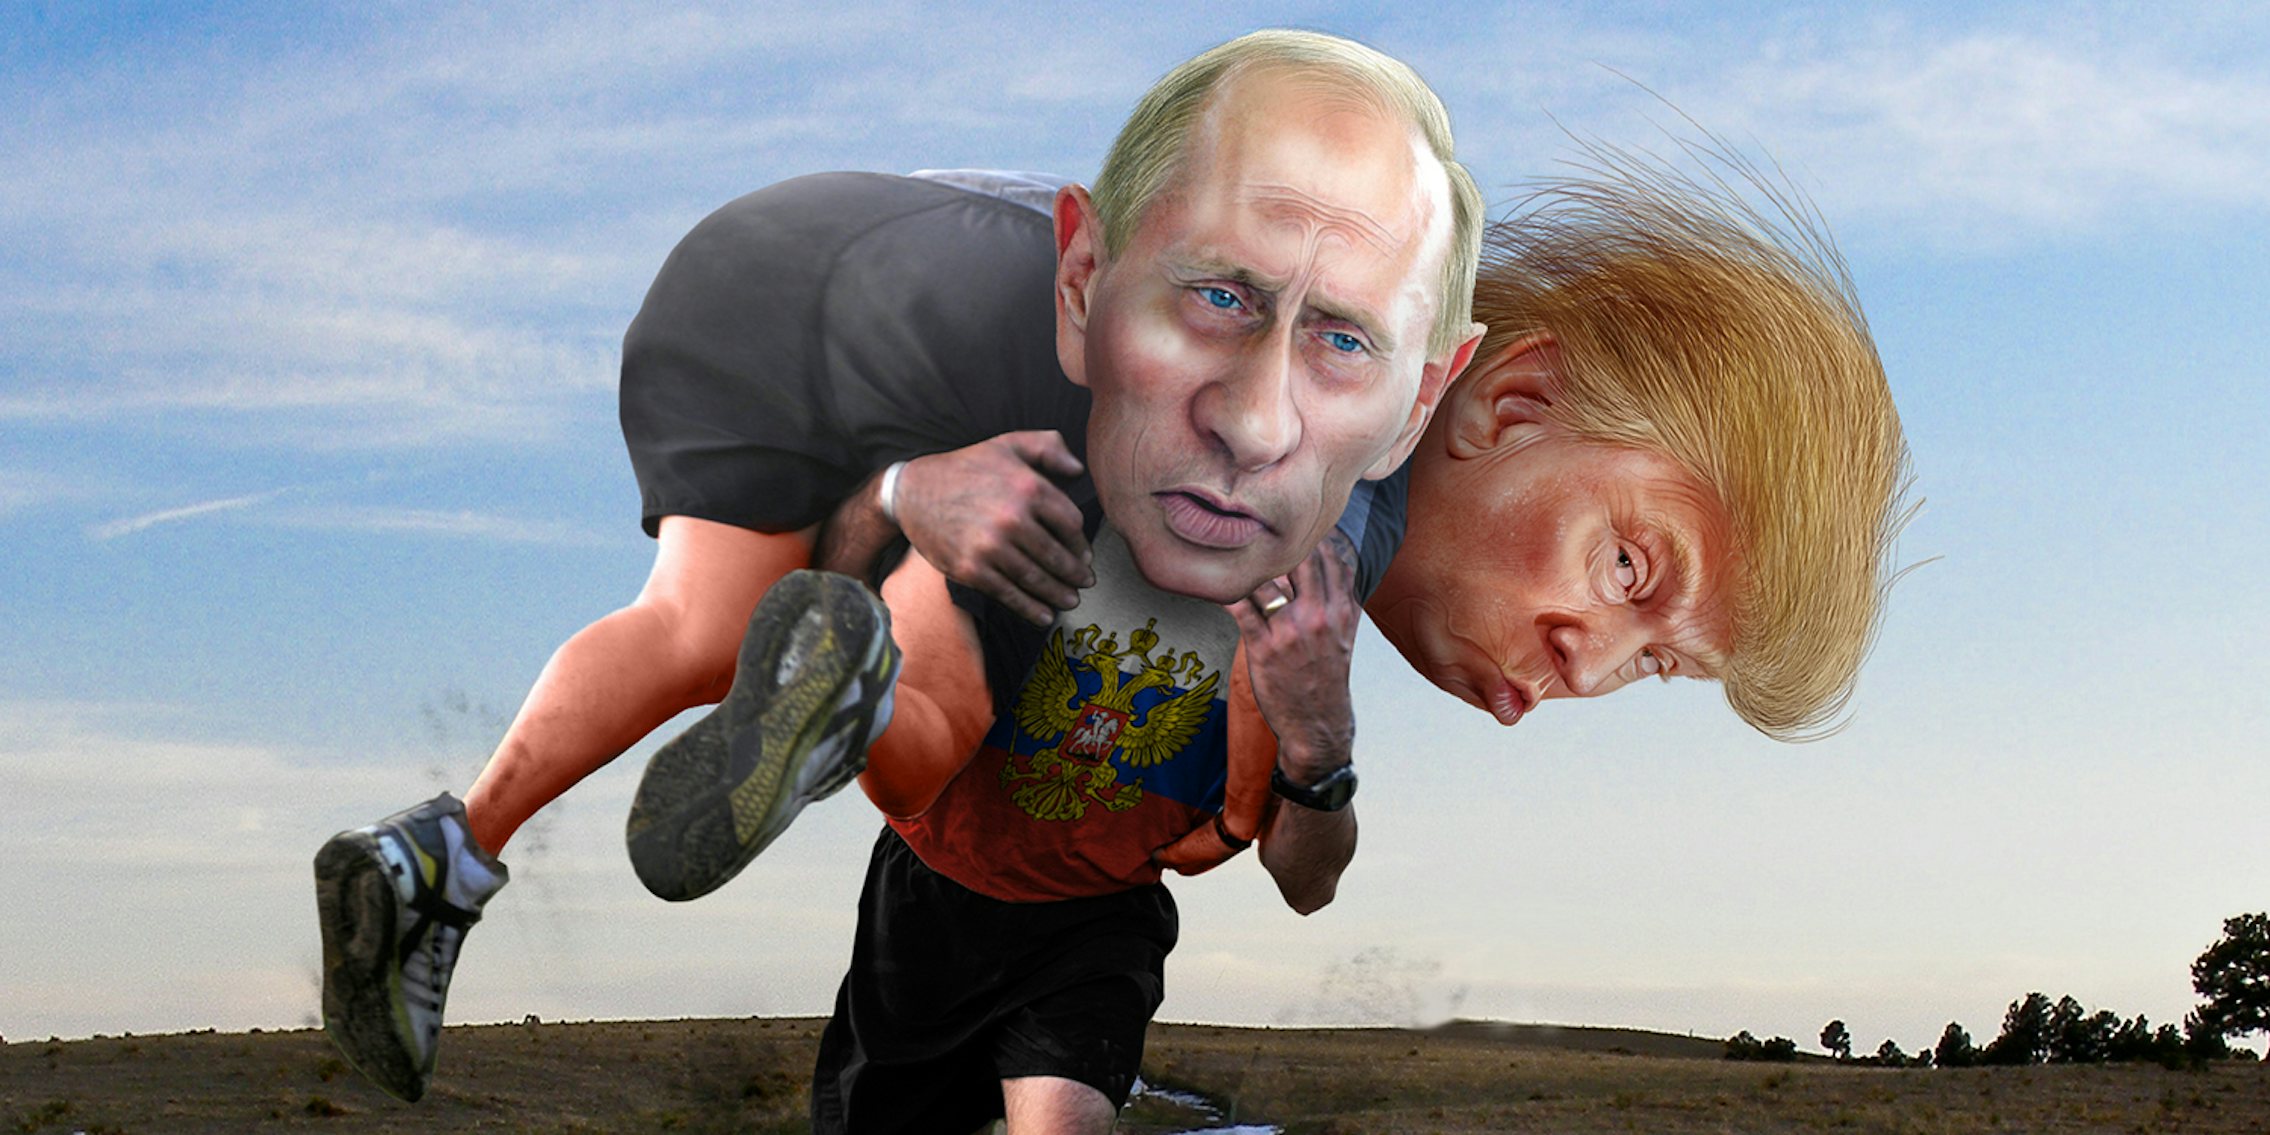 Putin carrying Trump